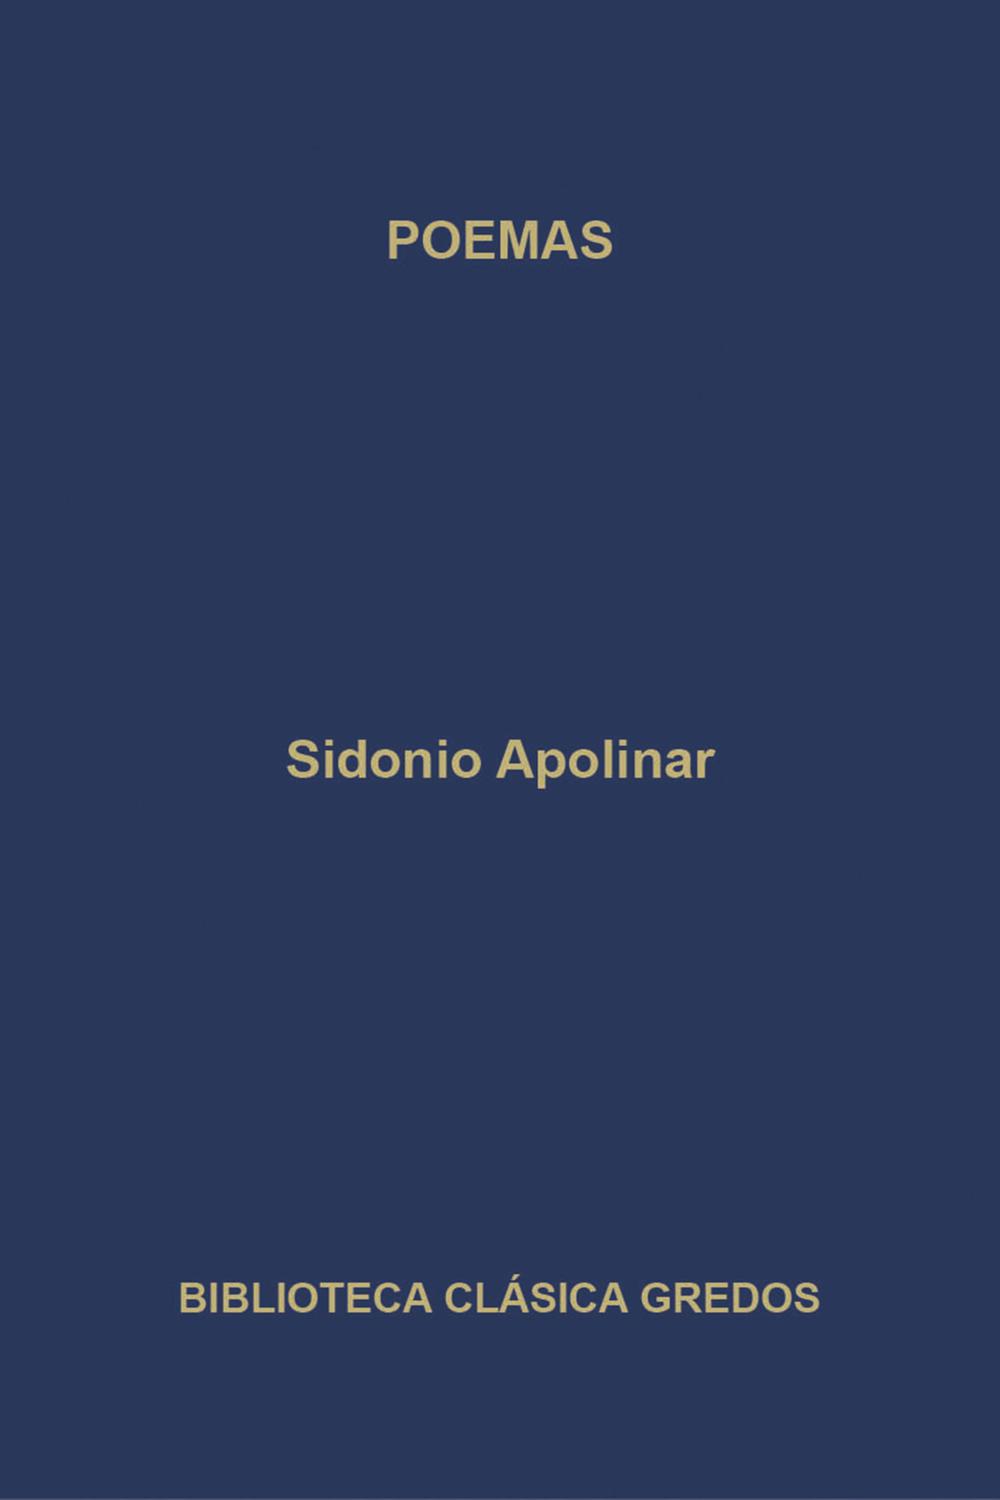 Poemas - Sidonio Apolinar, Agustín López Kindler, Eustaquio Sánchez Salor